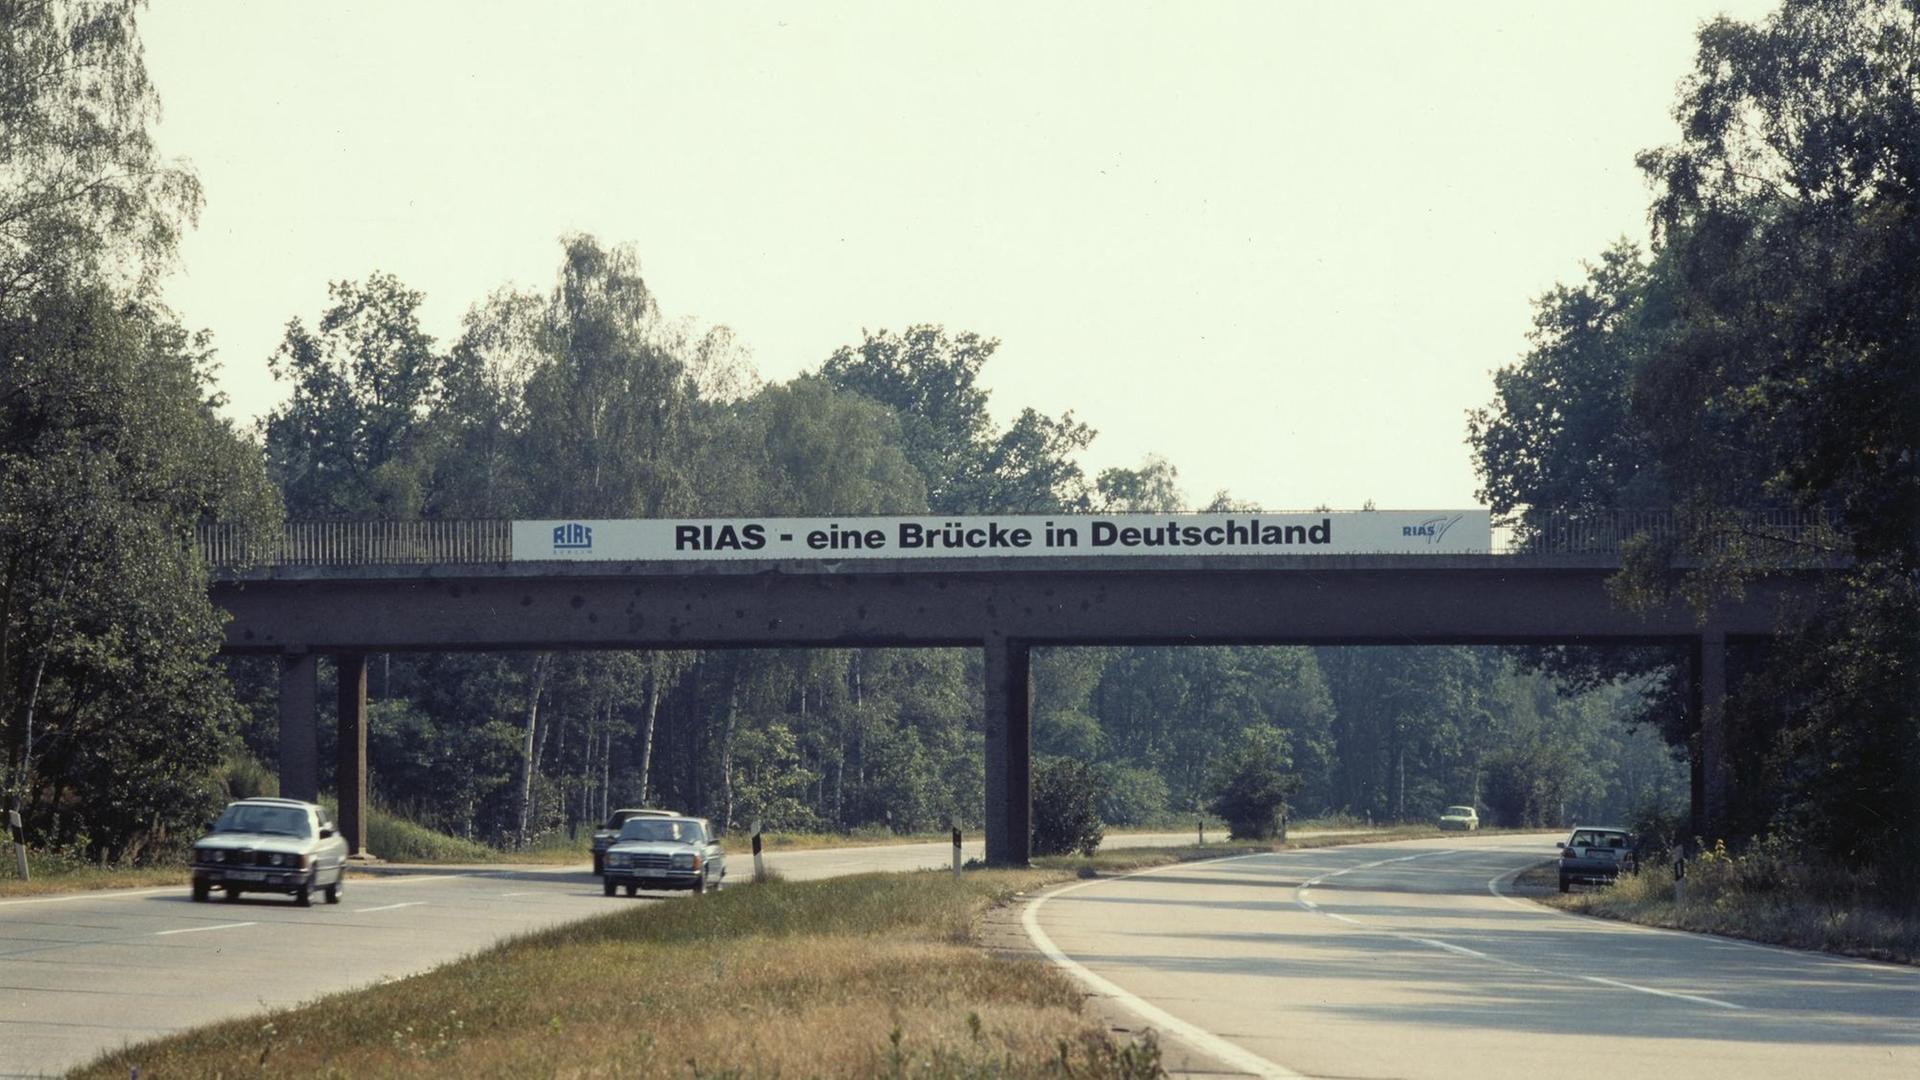 Ein Transpartent mit der Aufschrift "Rias - eine Brücke in Deutschland" ist an einer Autobahnbrücke ausgerollt.